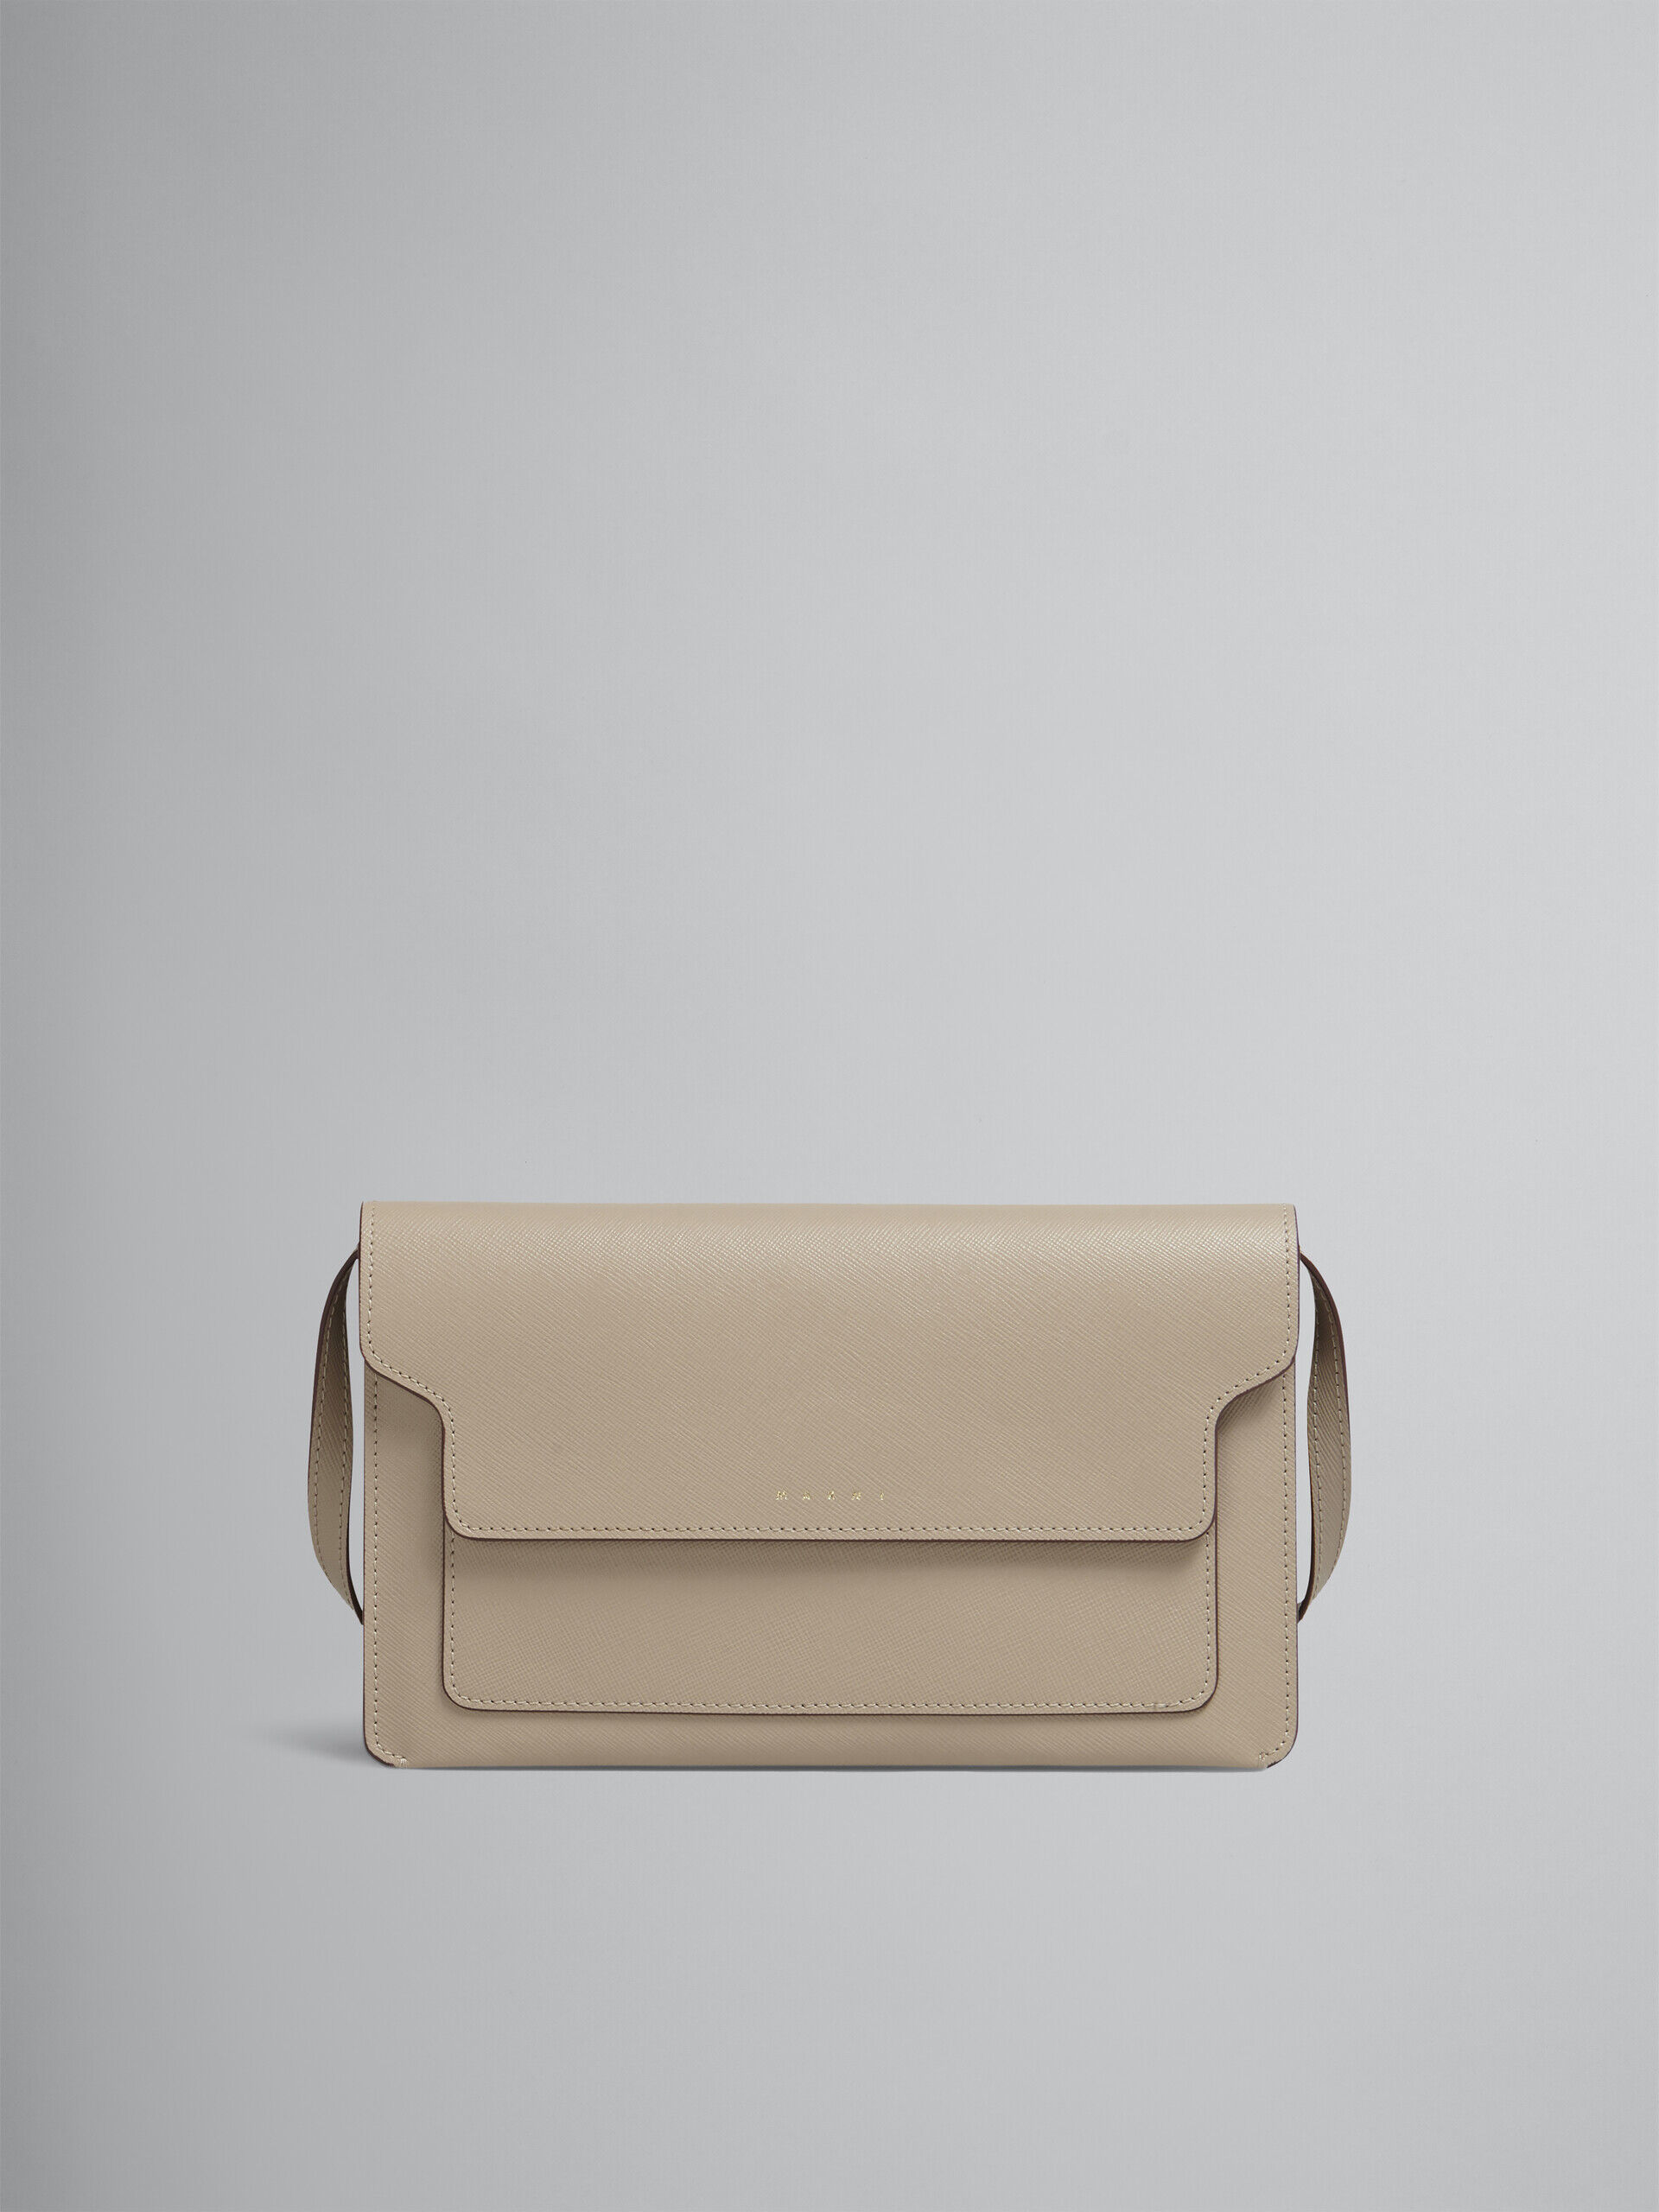 TRUNK clutch bag in beige saffiano leather | Marni